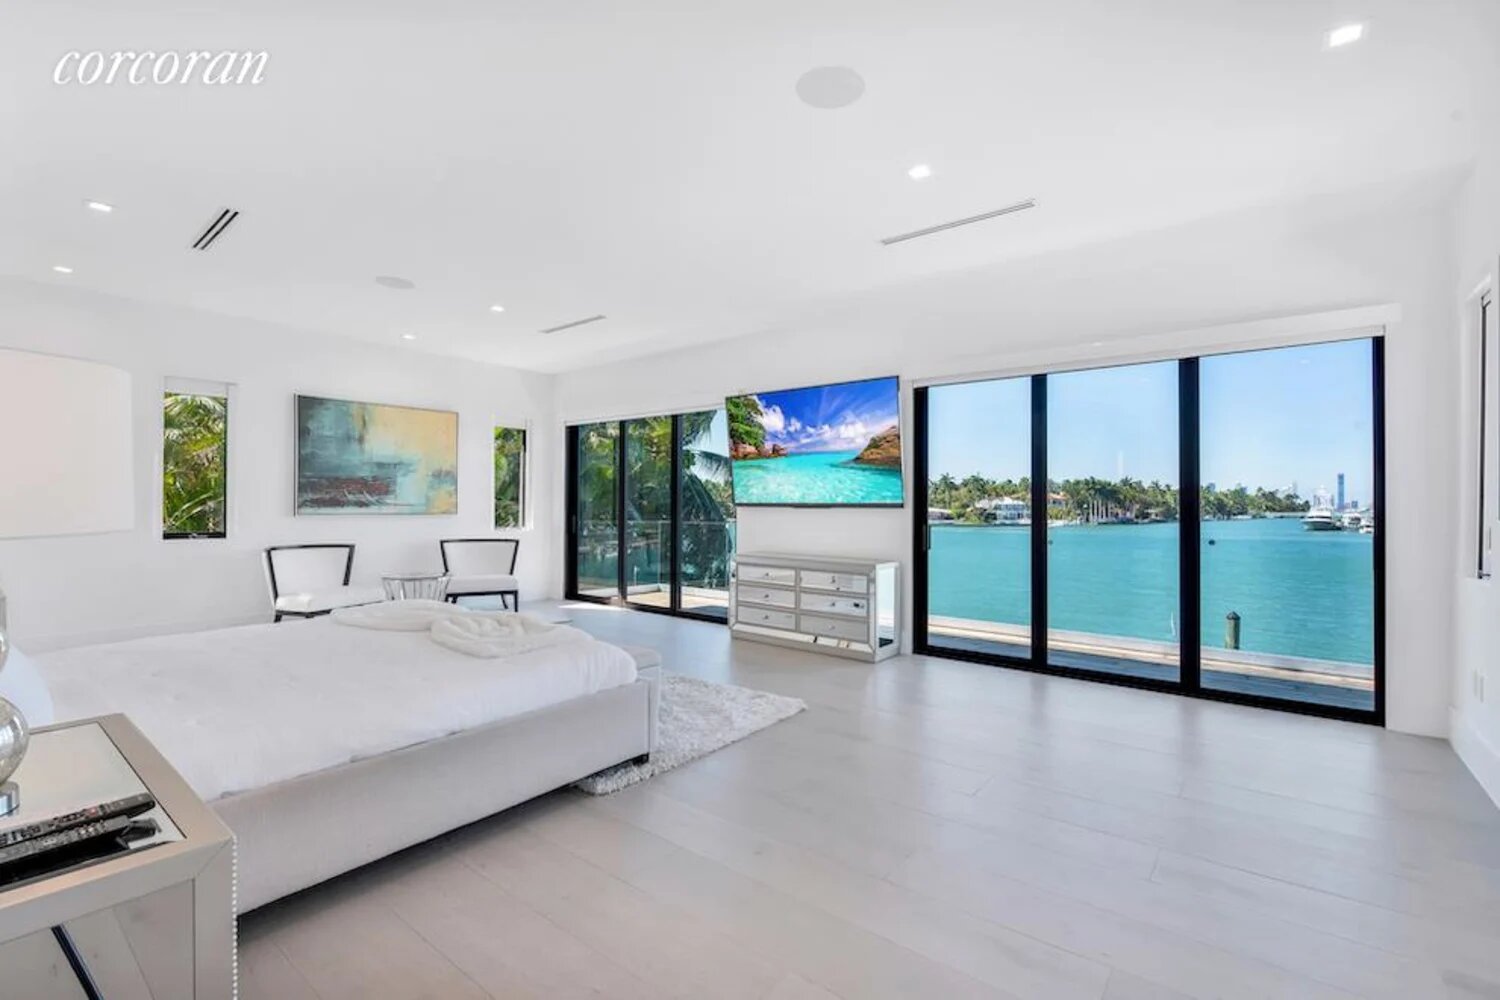 Casa Jennifer Lopez y Ben Affleck en Miami dormitorio con vistas